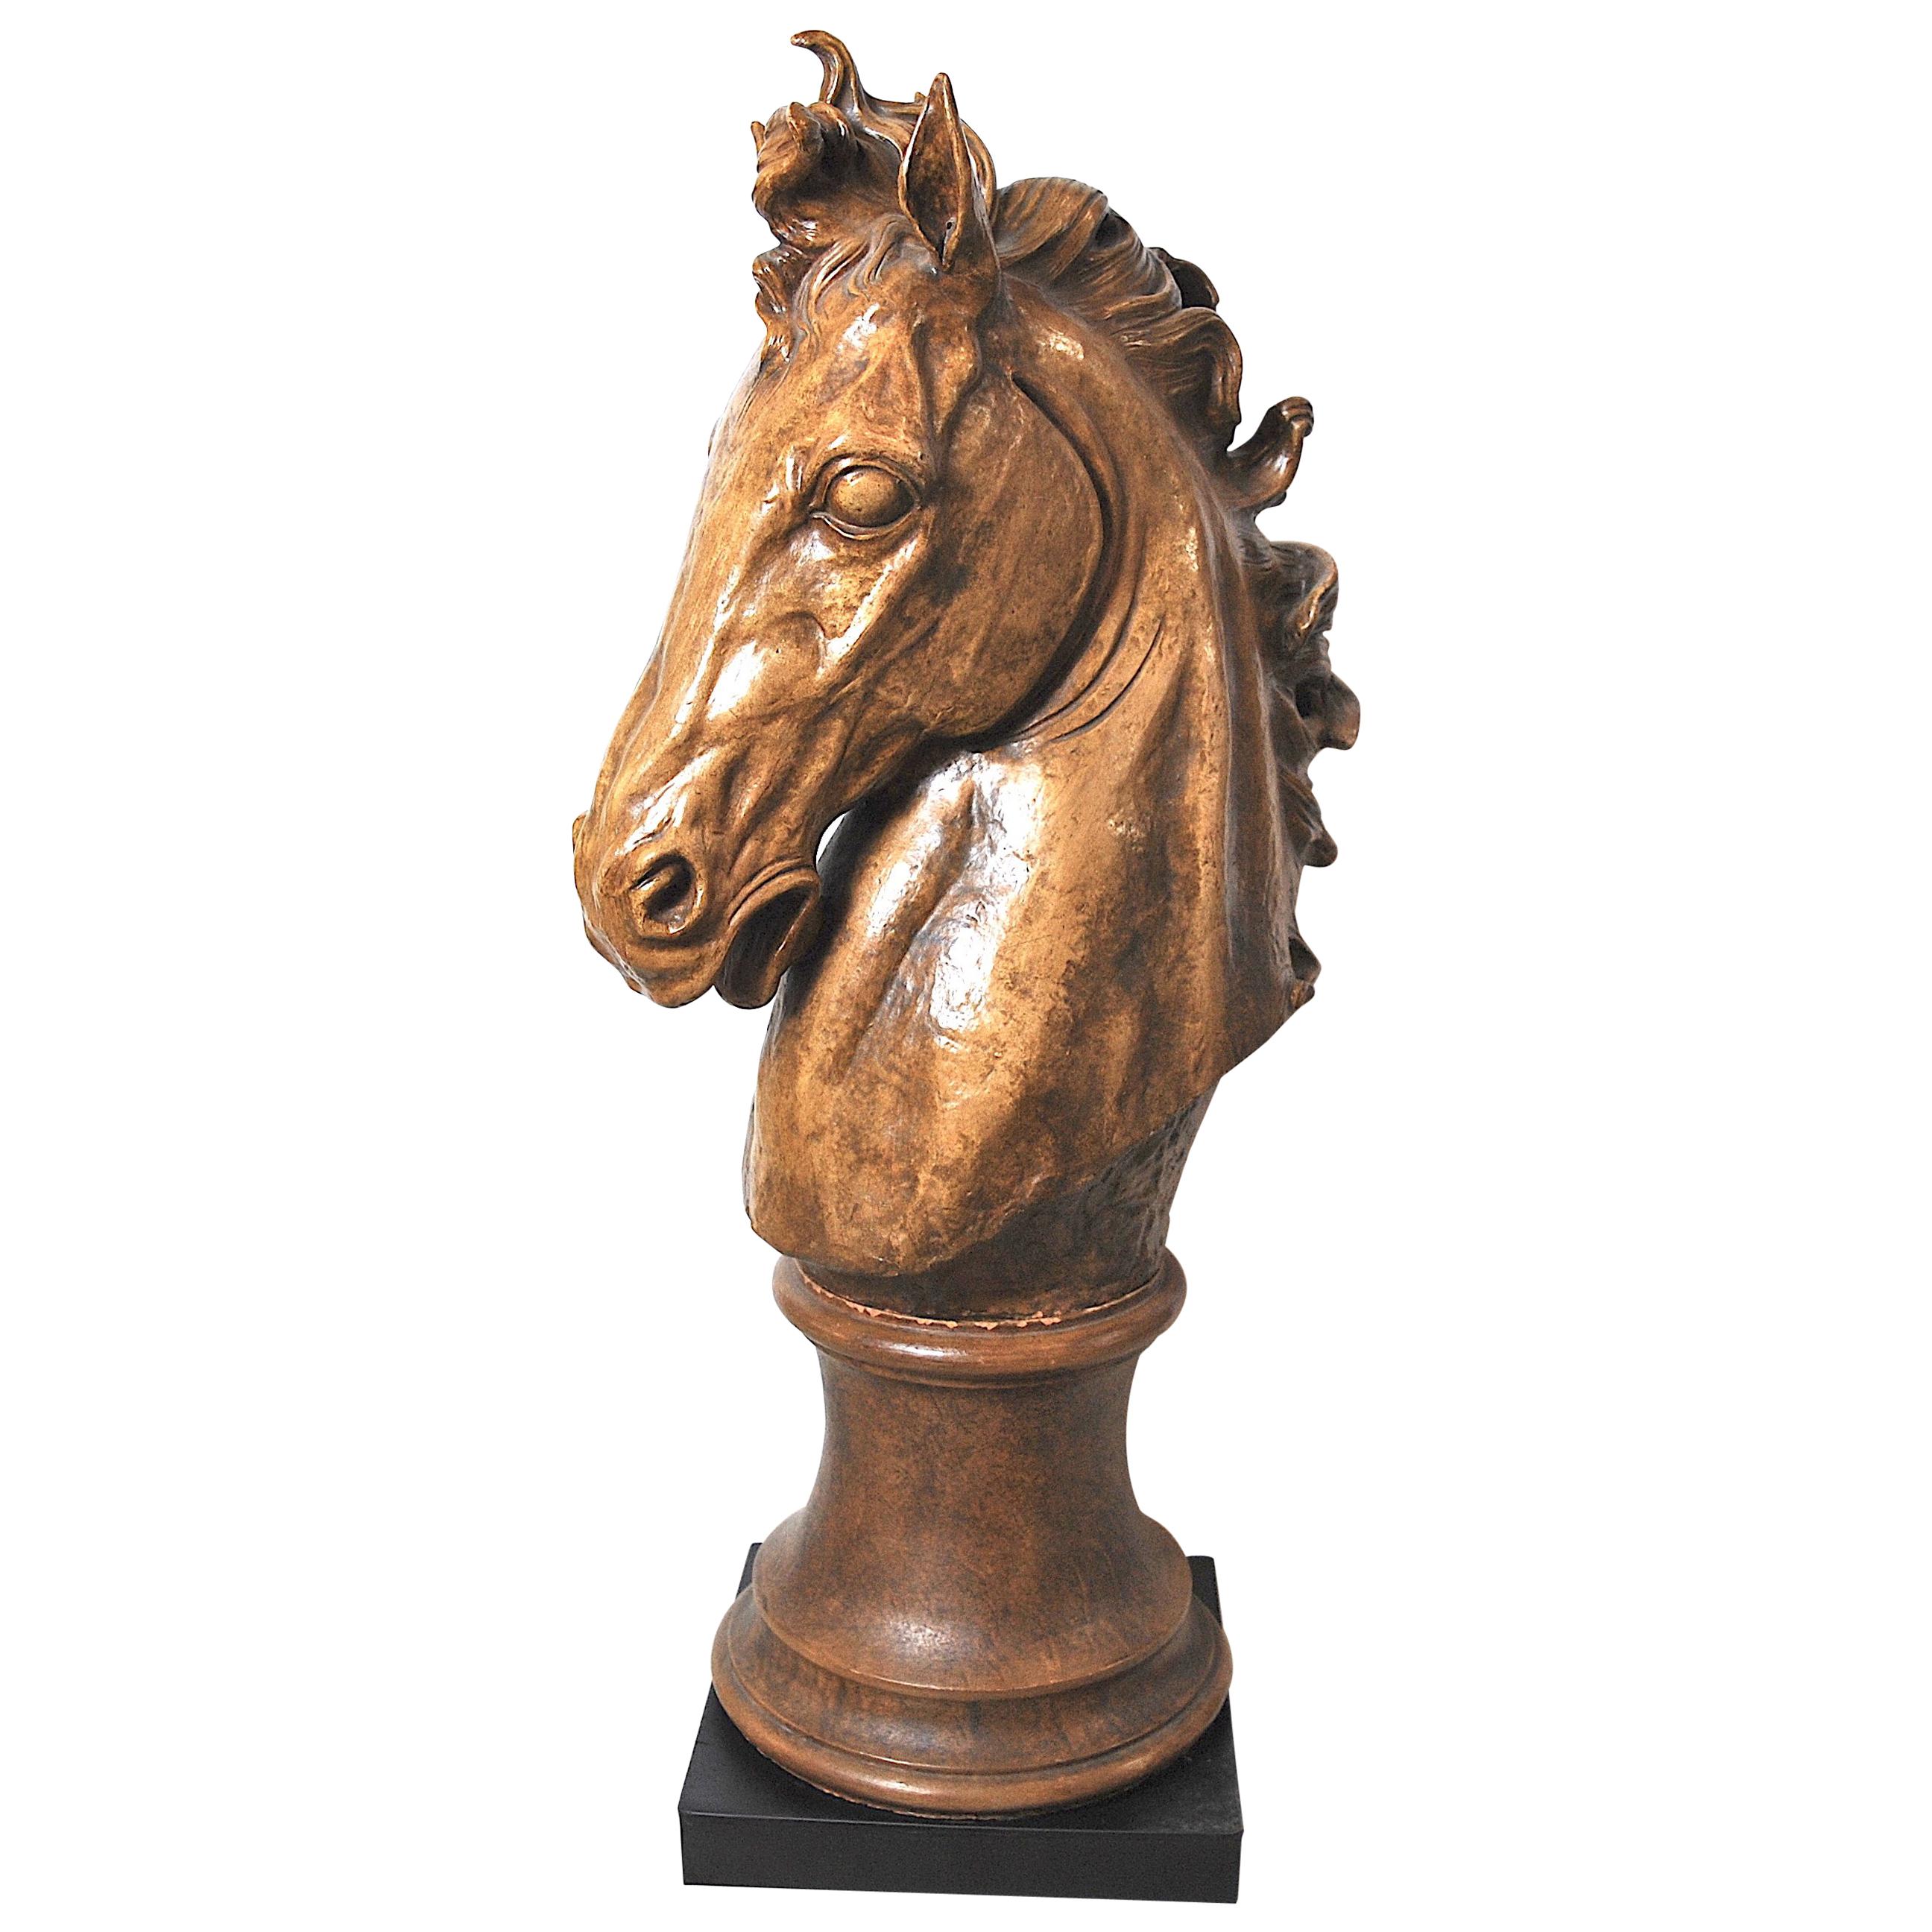 Horse ceramic sculpture 1950s Italian manufacture